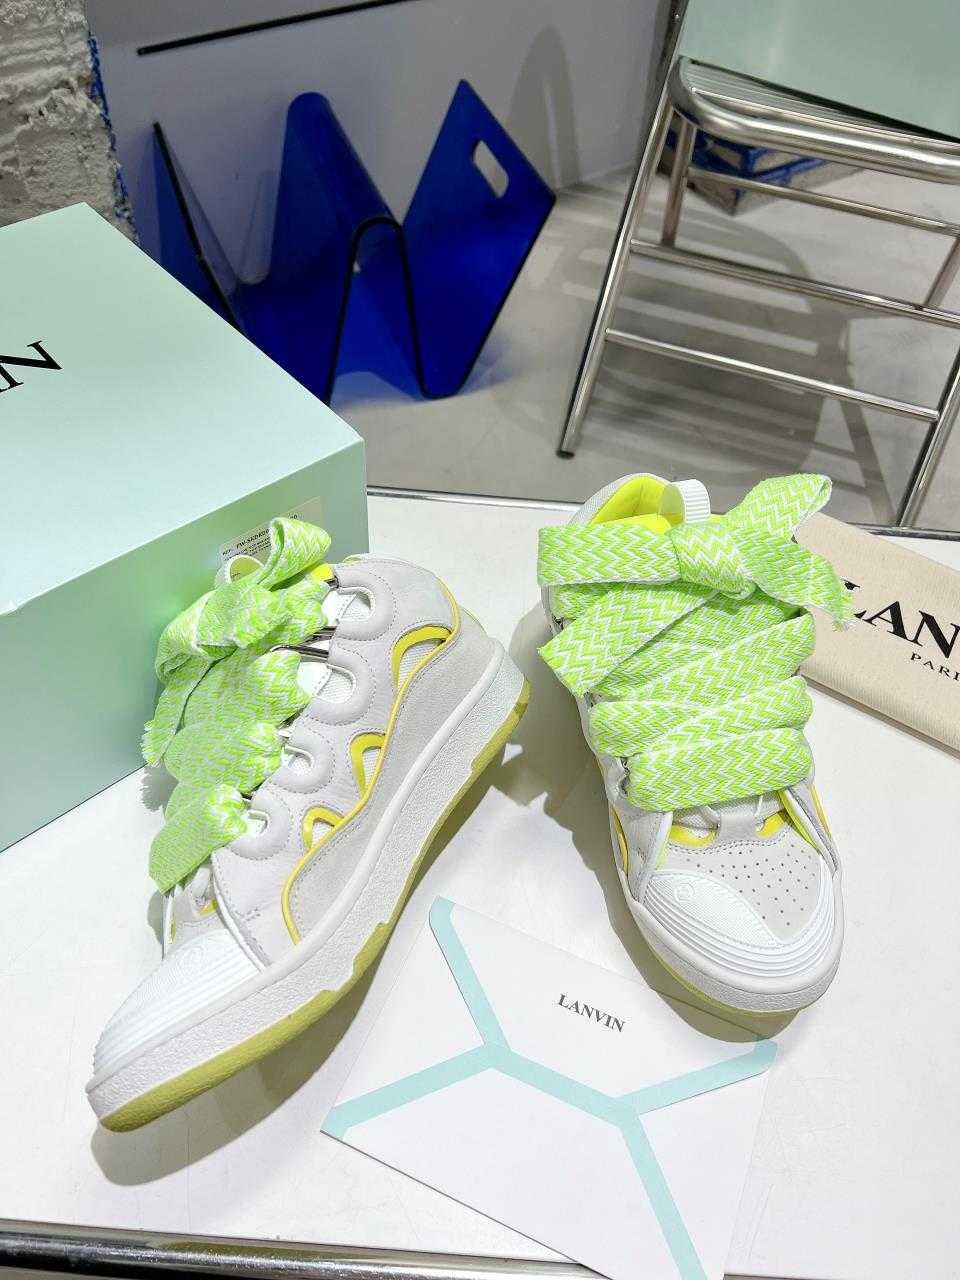 Adidasi Lanvin Curb - Premium